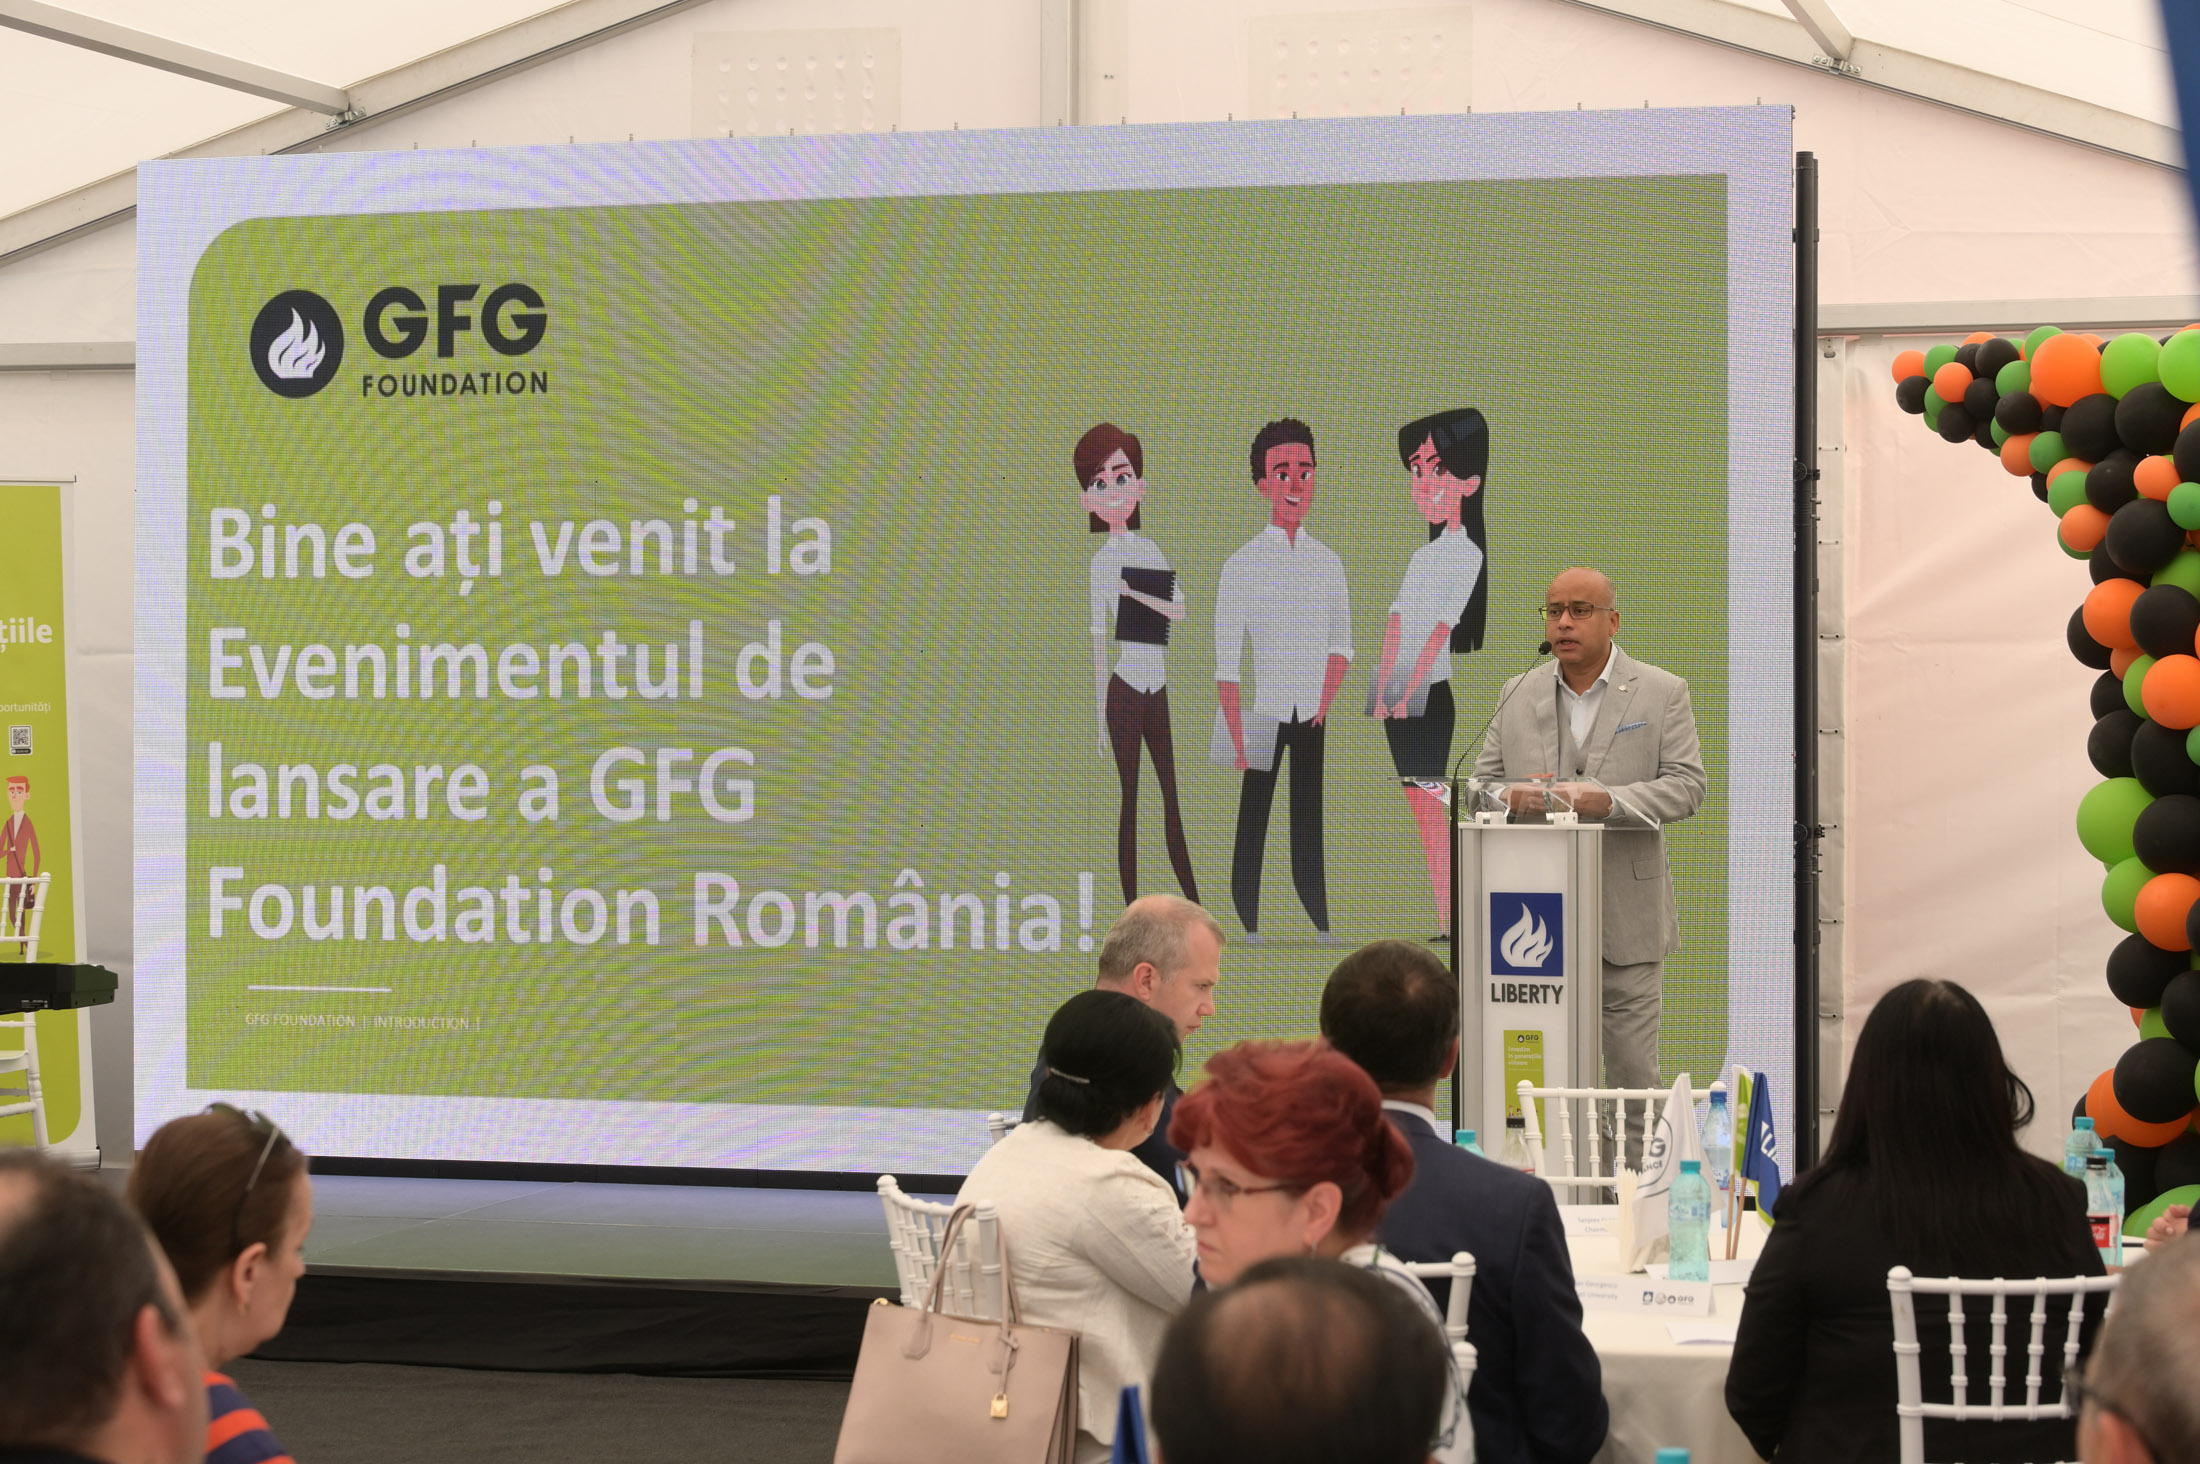 GFG फाउंडेशन रोमानिया में फैलता है